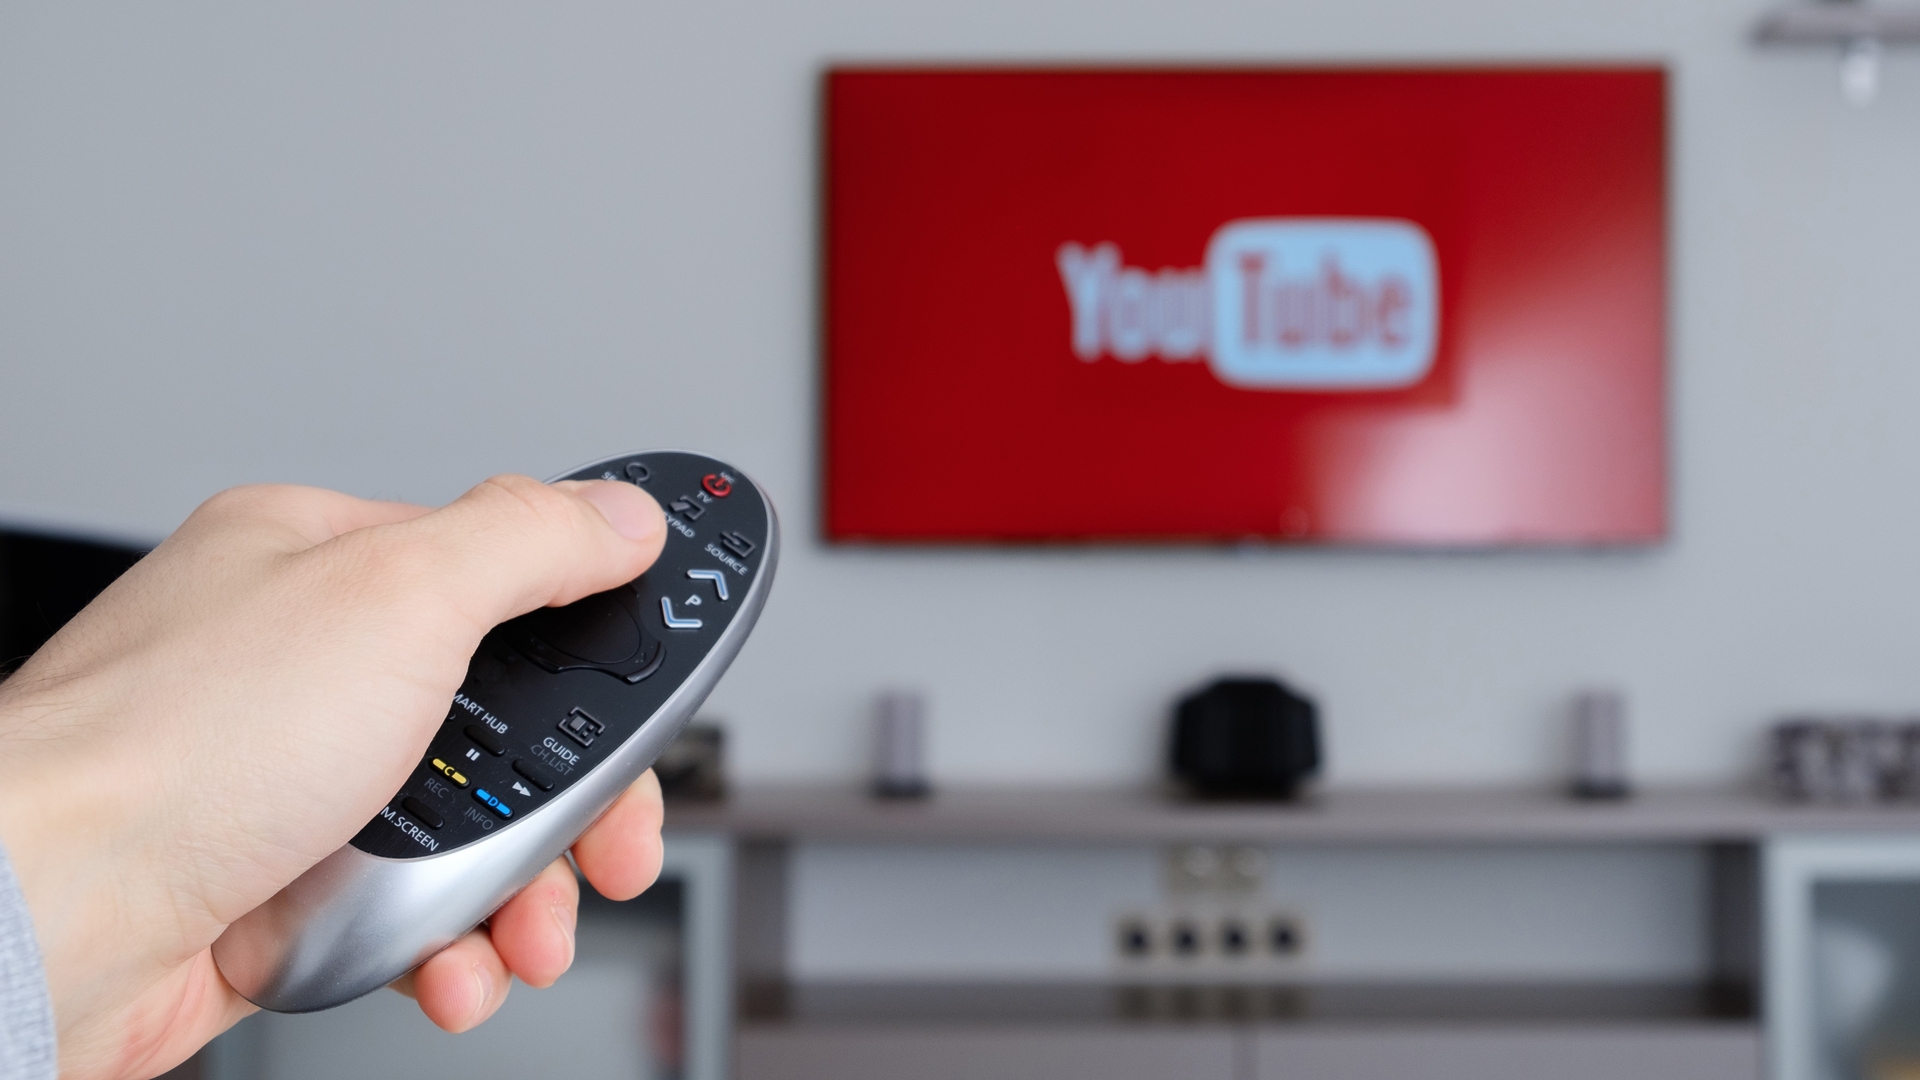 Dans cet article, nous allons expliquer pourquoi Channel 4 diffusera des émissions sur Youtube et comment vous pouvez les regarder gratuitement.